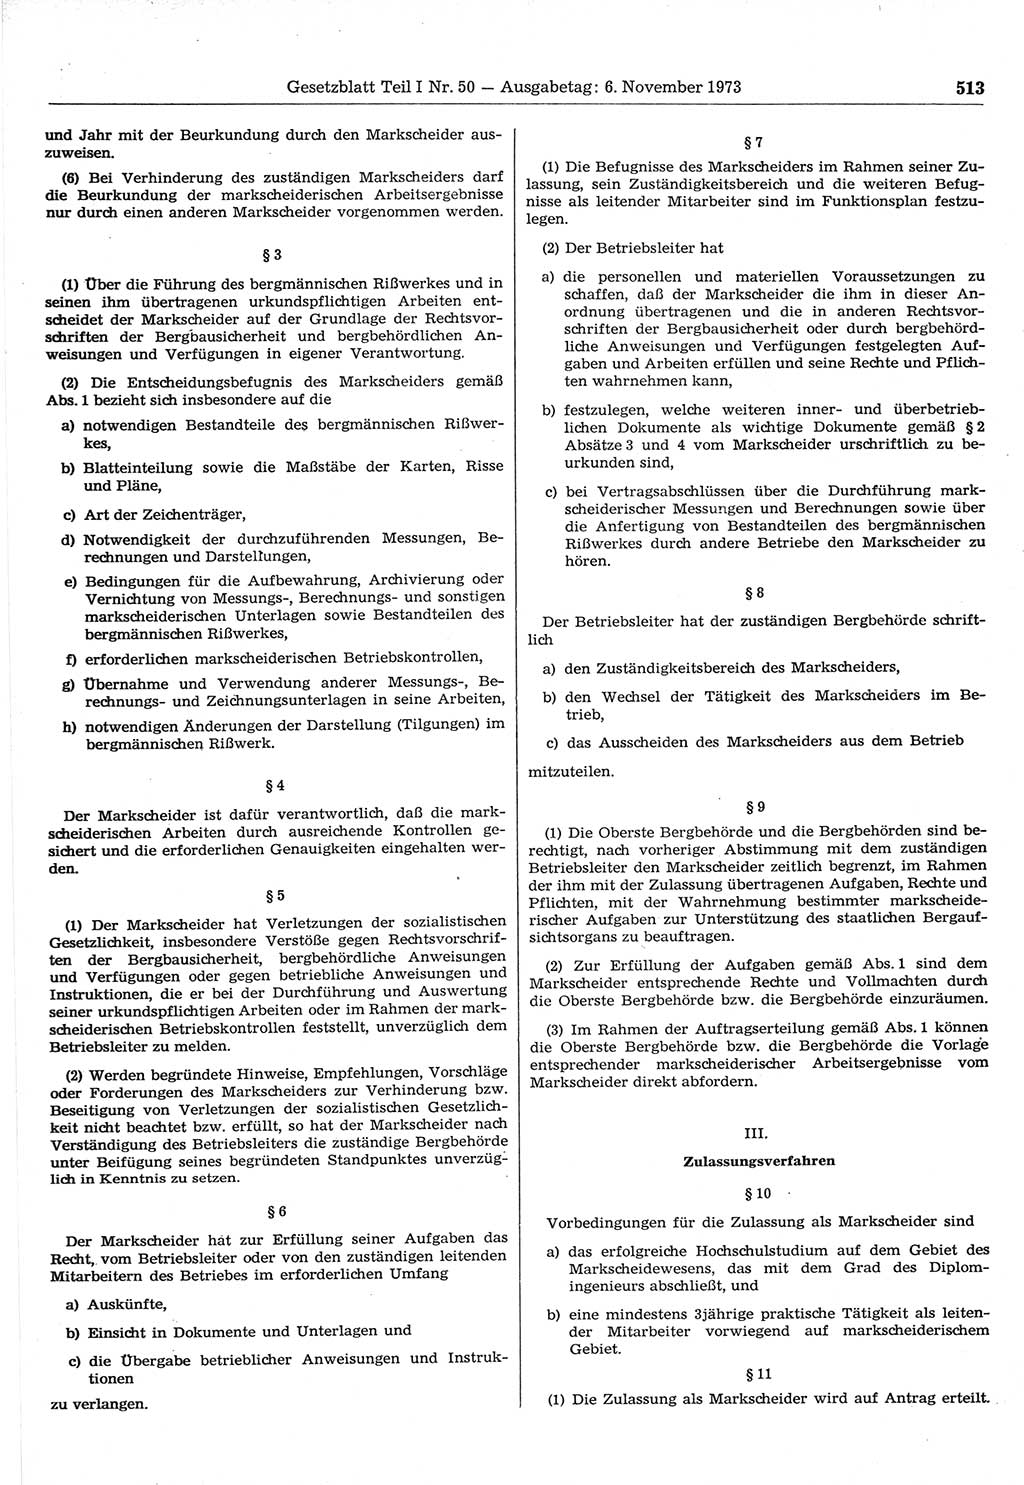 Gesetzblatt (GBl.) der Deutschen Demokratischen Republik (DDR) Teil Ⅰ 1973, Seite 513 (GBl. DDR Ⅰ 1973, S. 513)